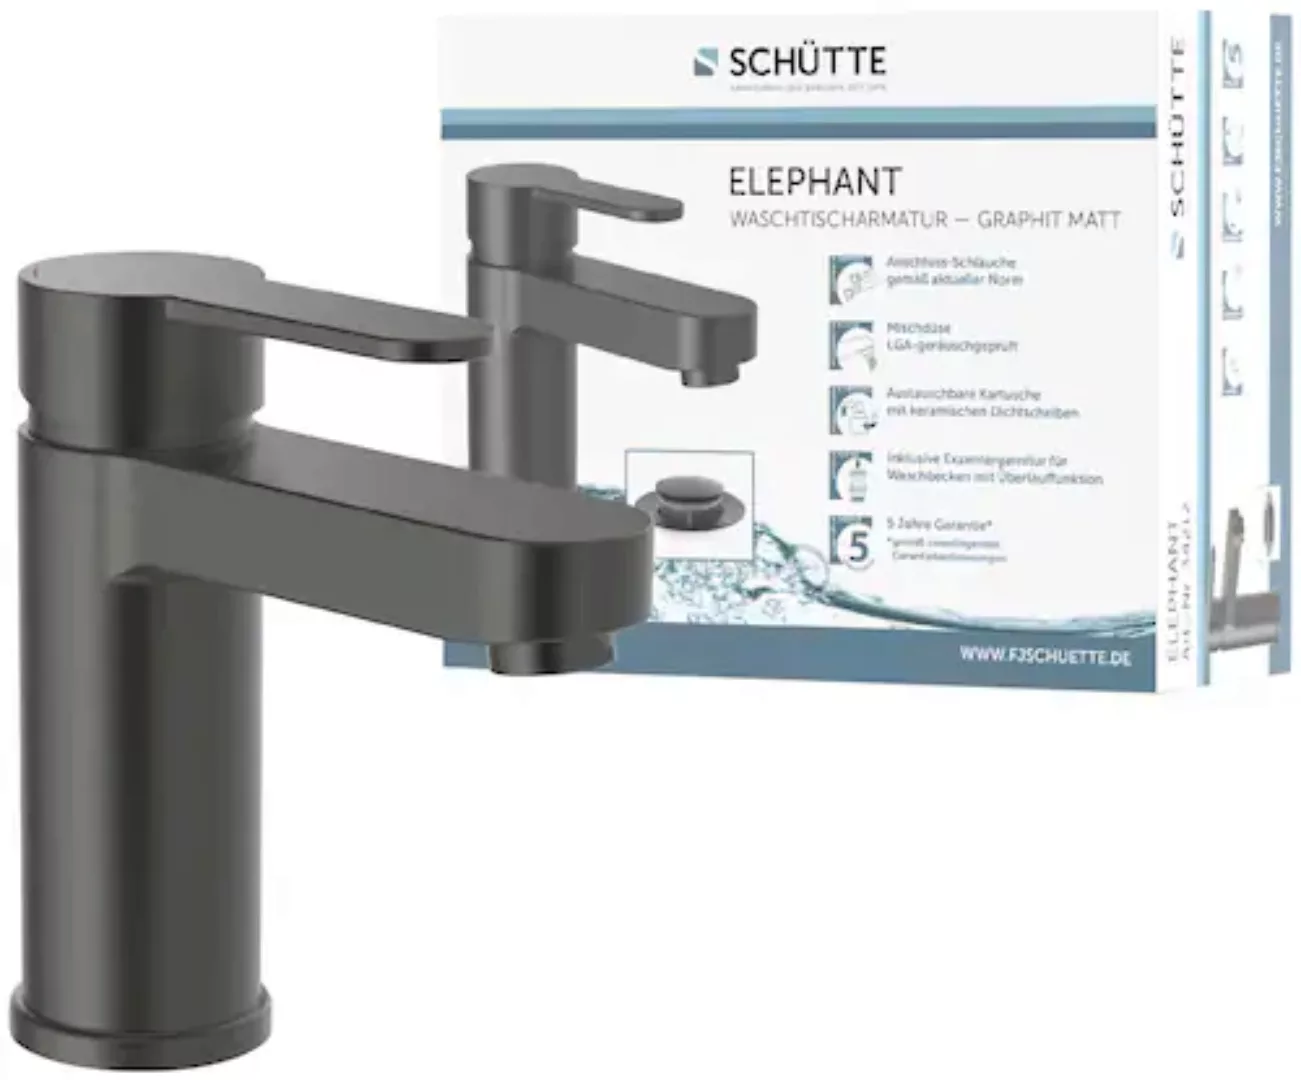 Schütte Waschtischarmatur »ELEPHANT«, inkl. Pop-up, geräuscharm, Marken-Mis günstig online kaufen